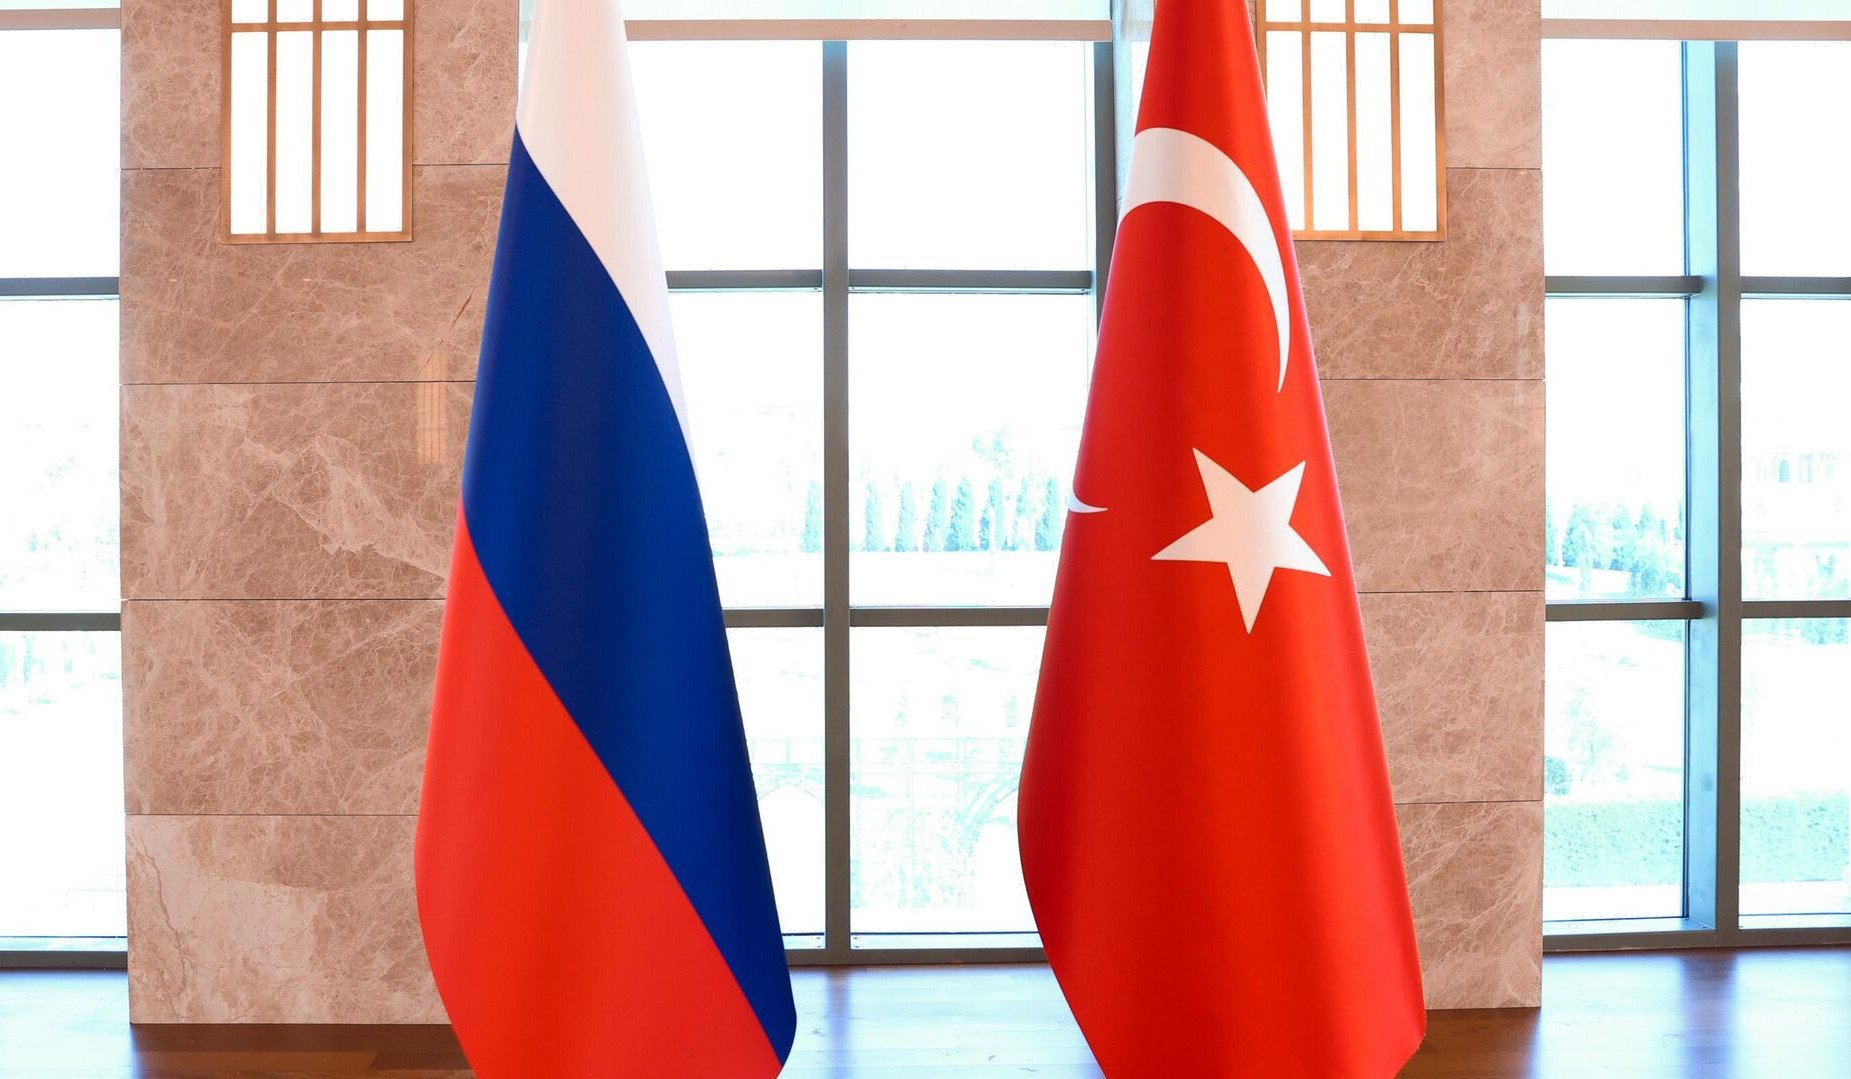 ՌԴ և Թուրքիայի ԱԳՆ-ները կարևորել են հայ-ադրբեջանական հարաբերությունների կարգավորման գործընթացին աջակցությունը տարածաշրջանային ձևաչափերով